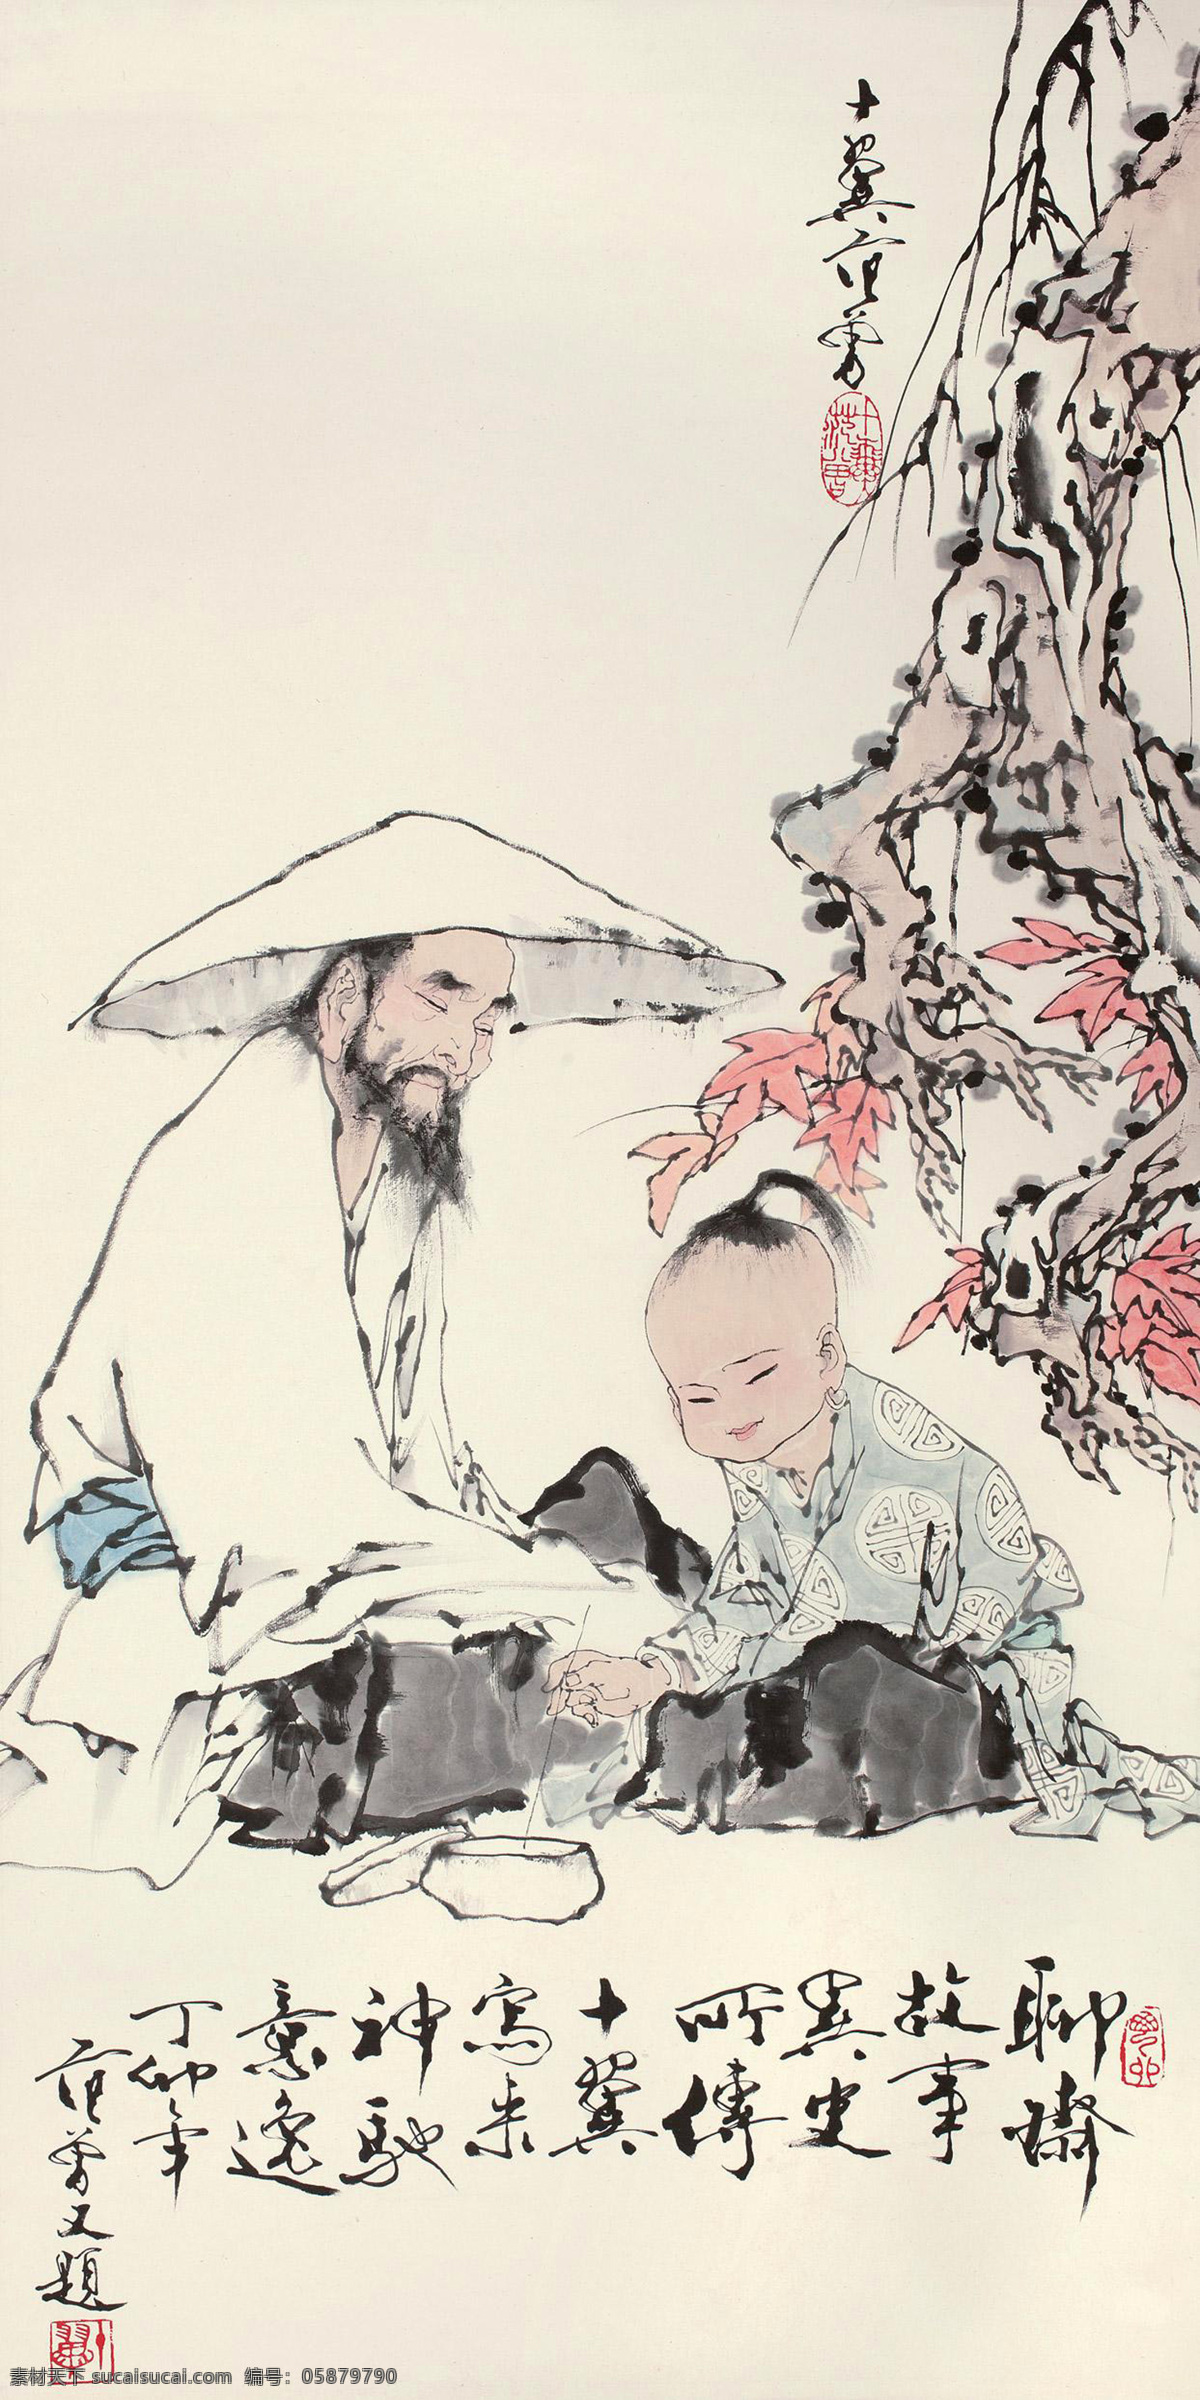 蒲松龄写照 国画 范曾 蒲松龄 聊斋志异 孩童 老者 中国画 绘画书法 文化艺术 国画范 曾